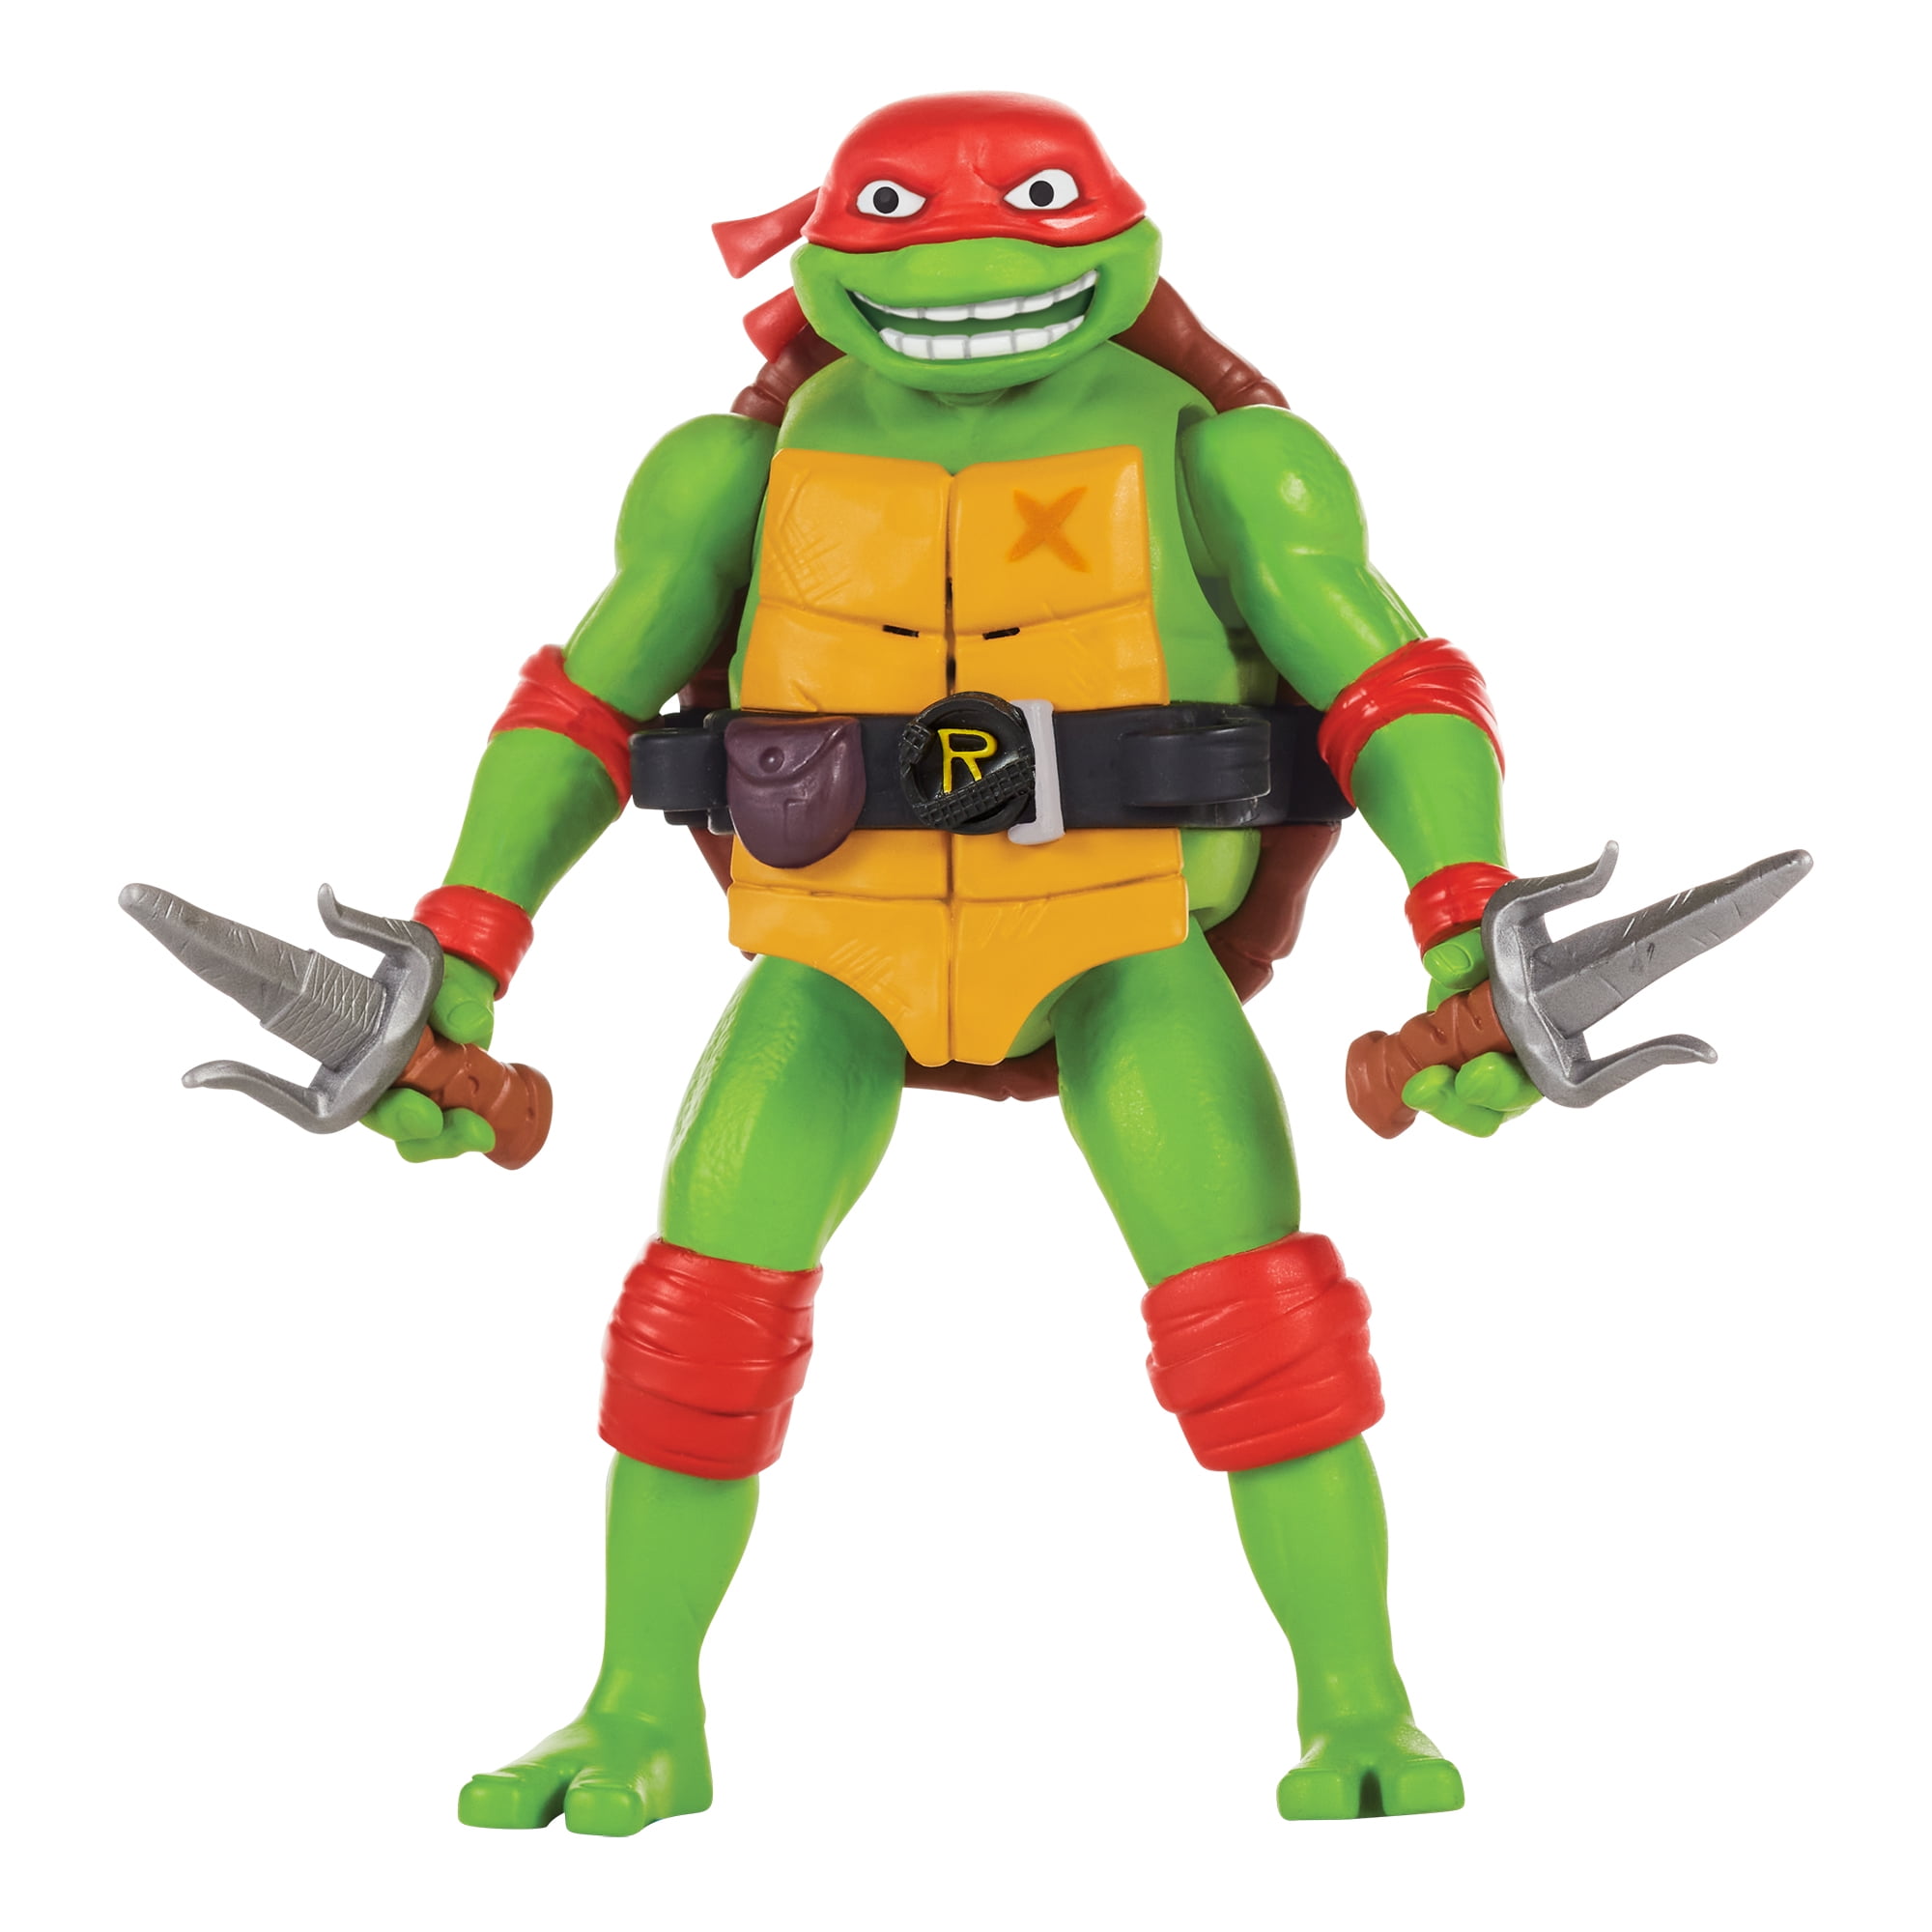 Raphael Birthday Greeting Card - Ninja Turtles - TMNT